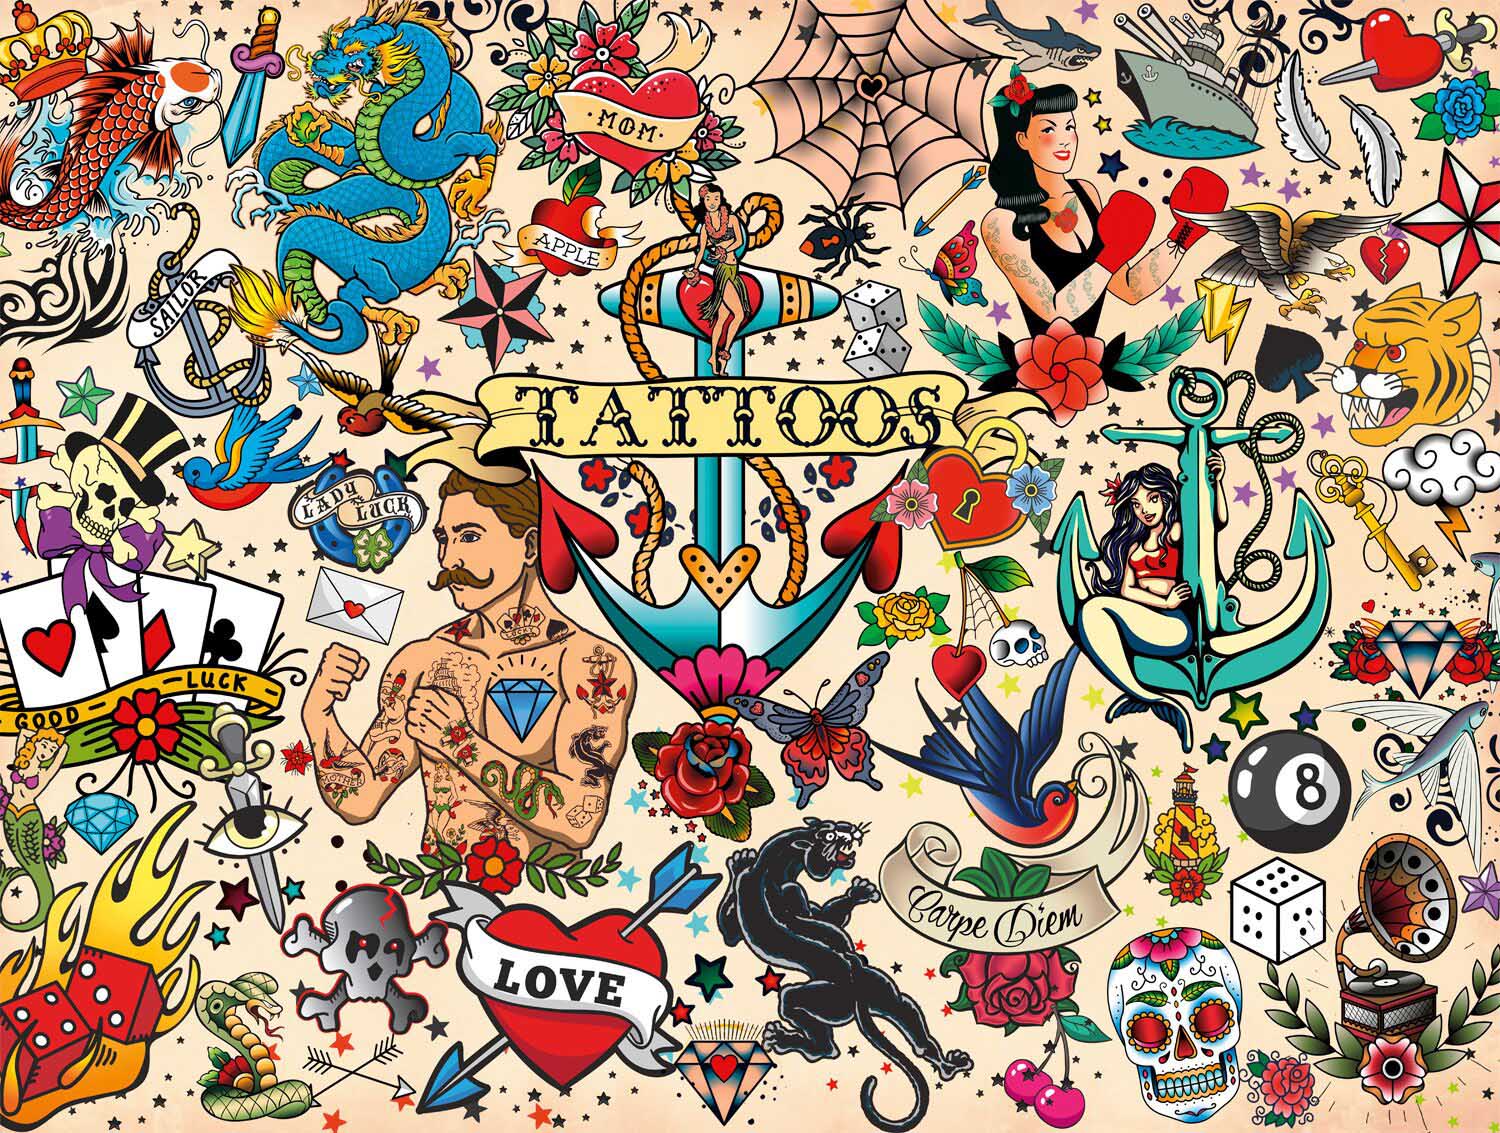 Tattoopalooza Cultural Art Jigsaw Puzzle